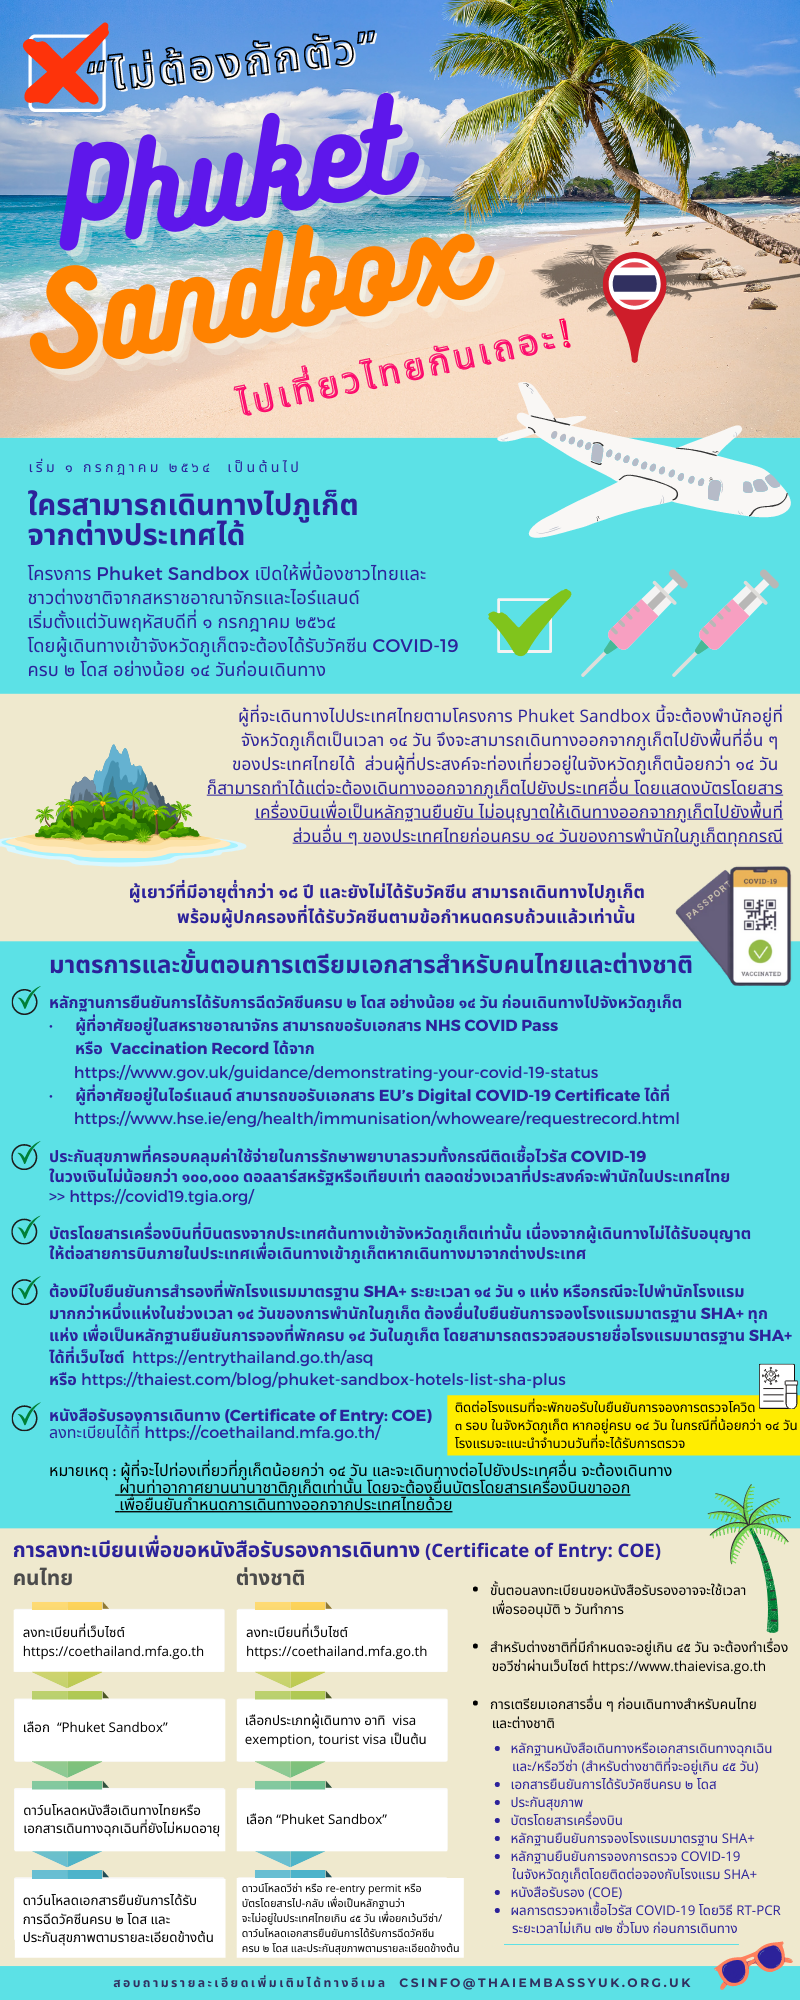 Phuket_Sandbox_(1)